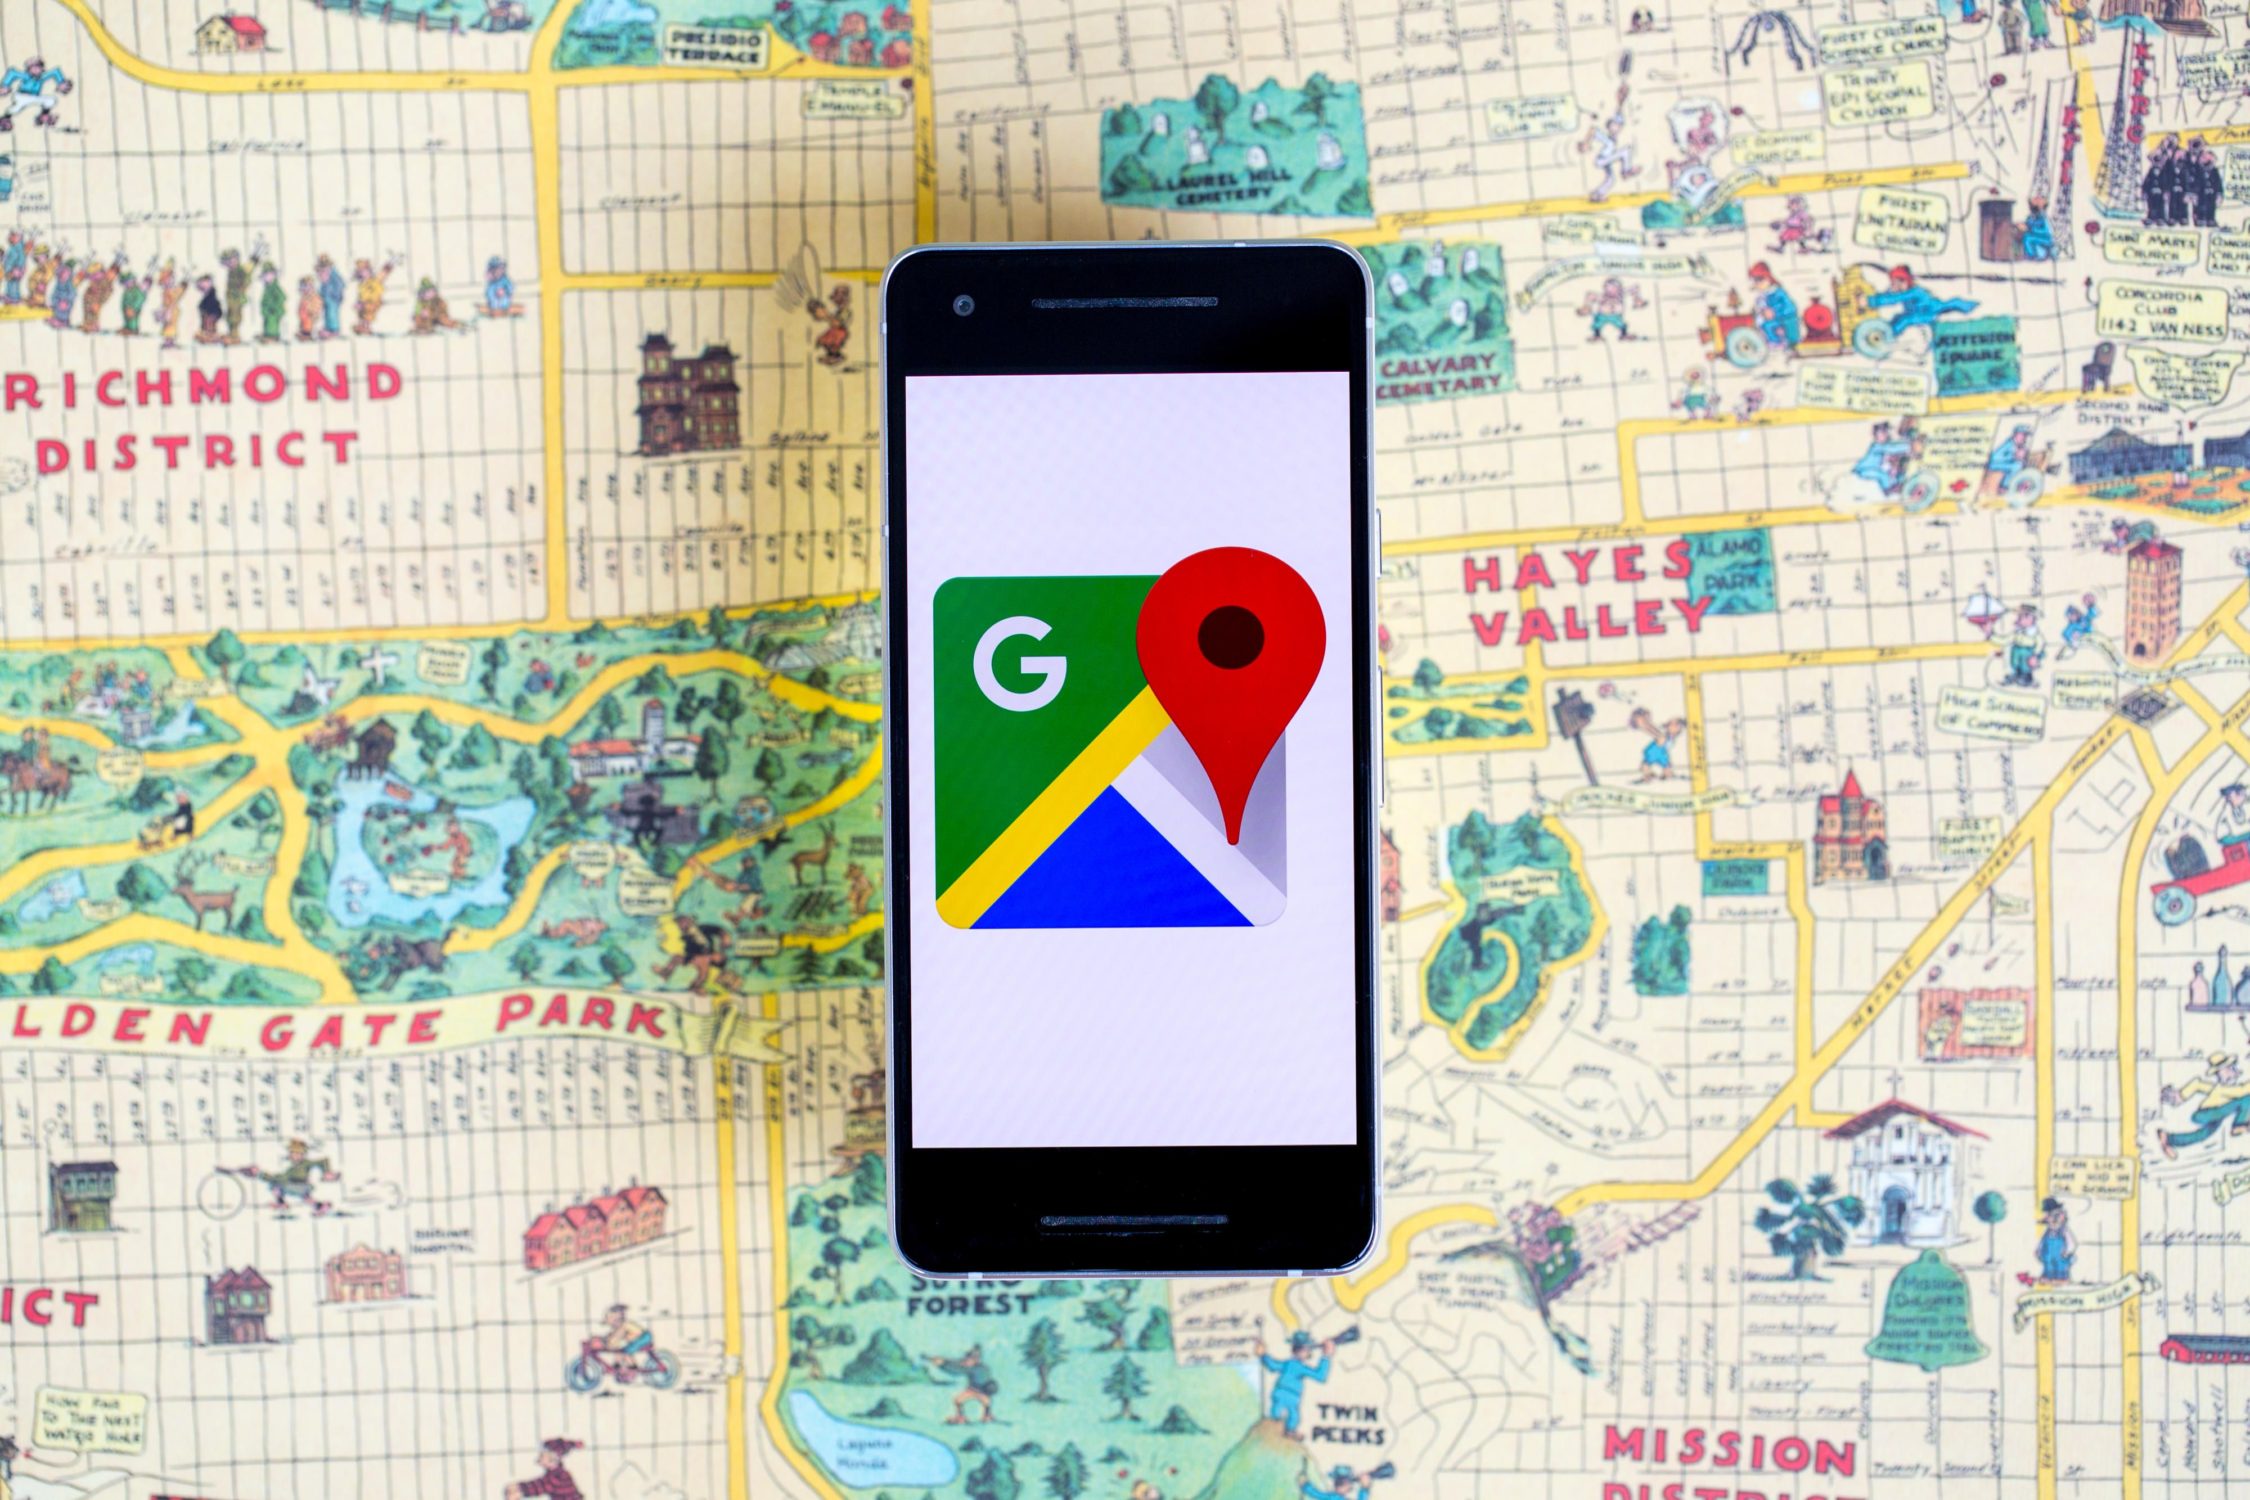 Tras YouTube y Google Play: Google Maps está entre las tres primeras aplicaciones con 10.000 millones de descargas